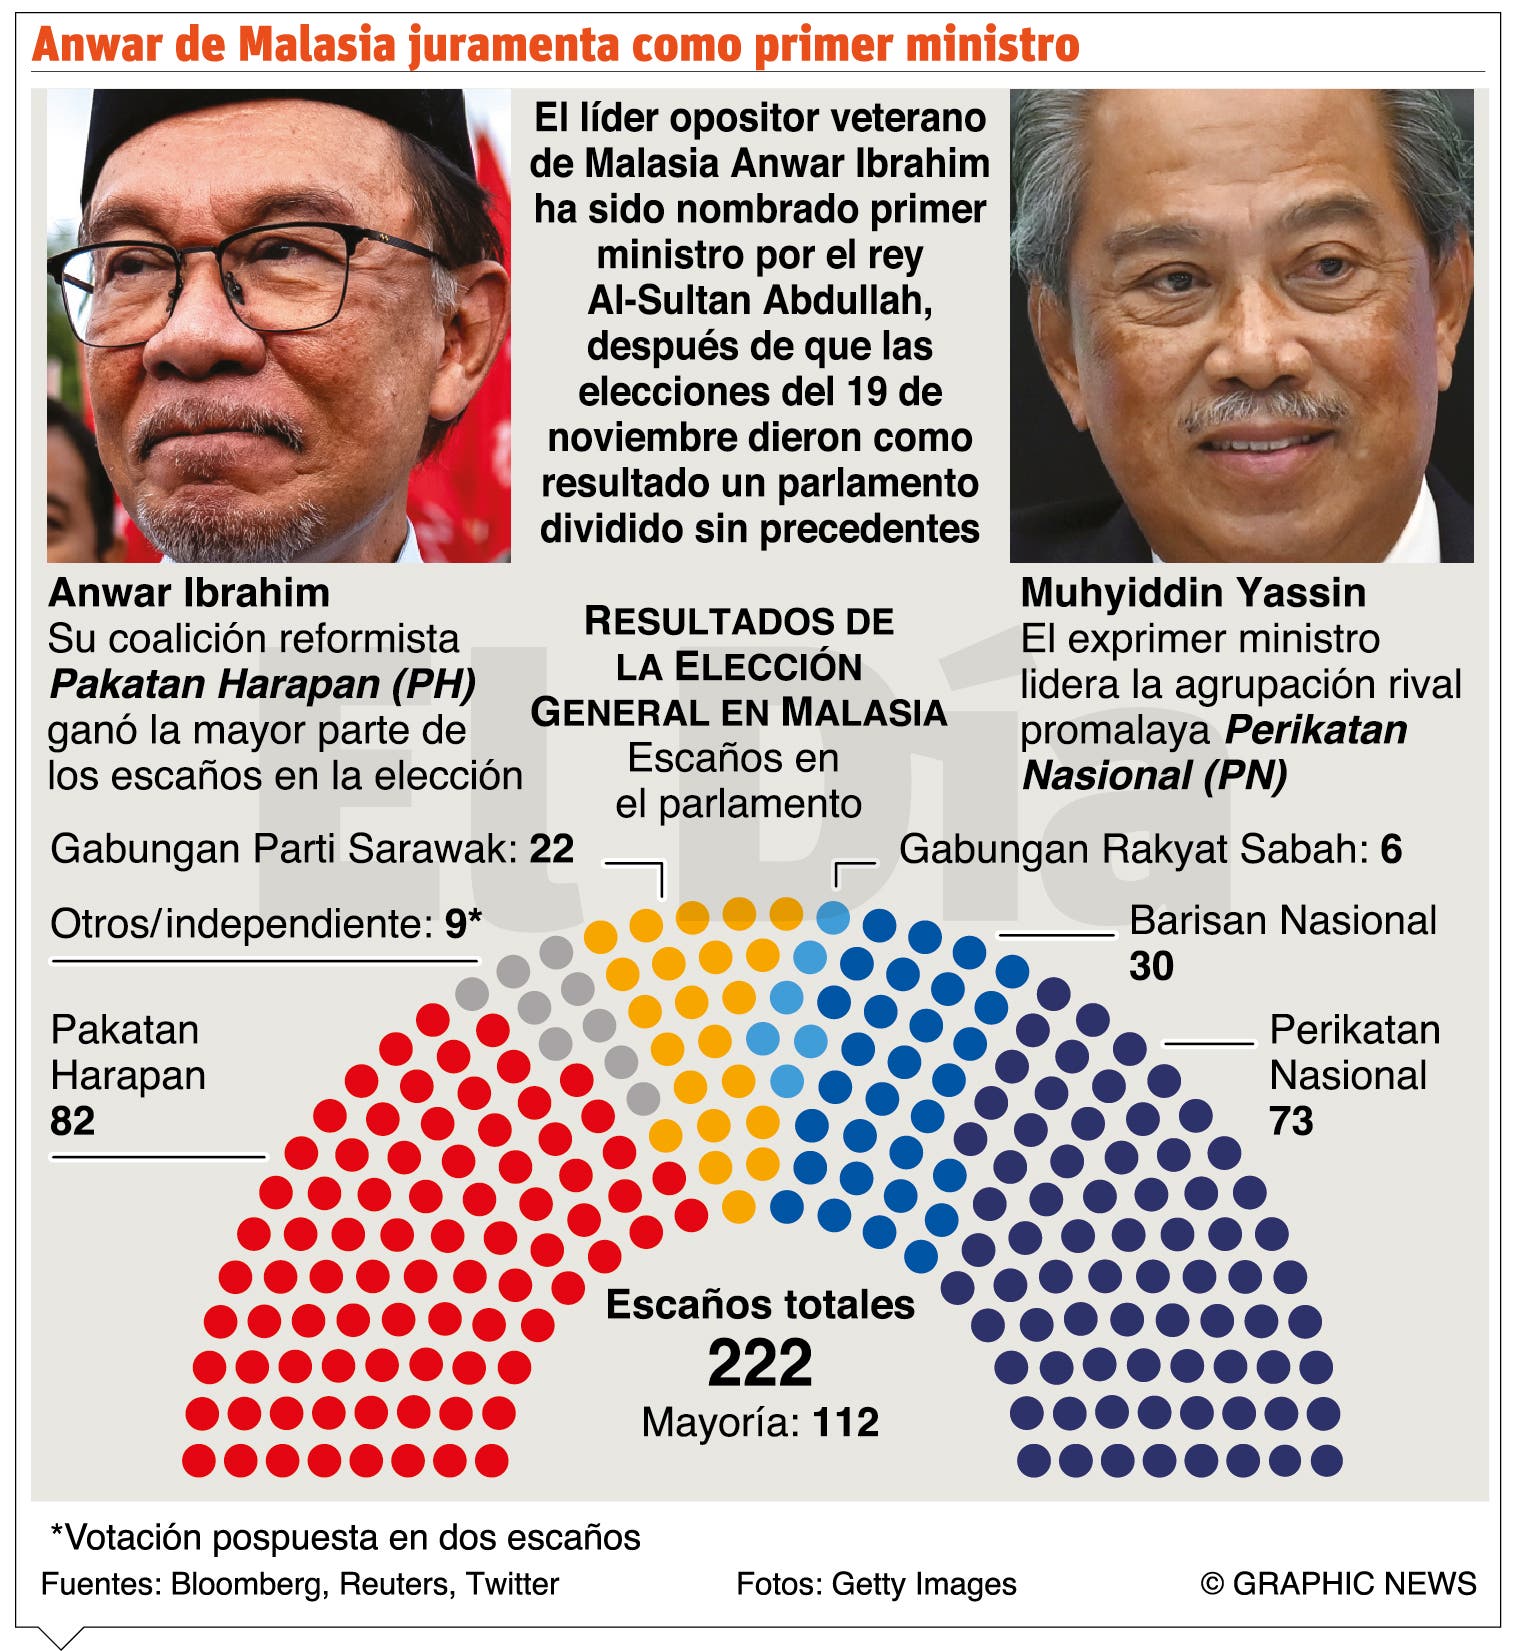 Anwar Ibrahim es el nuevo primer ministro de Malasia